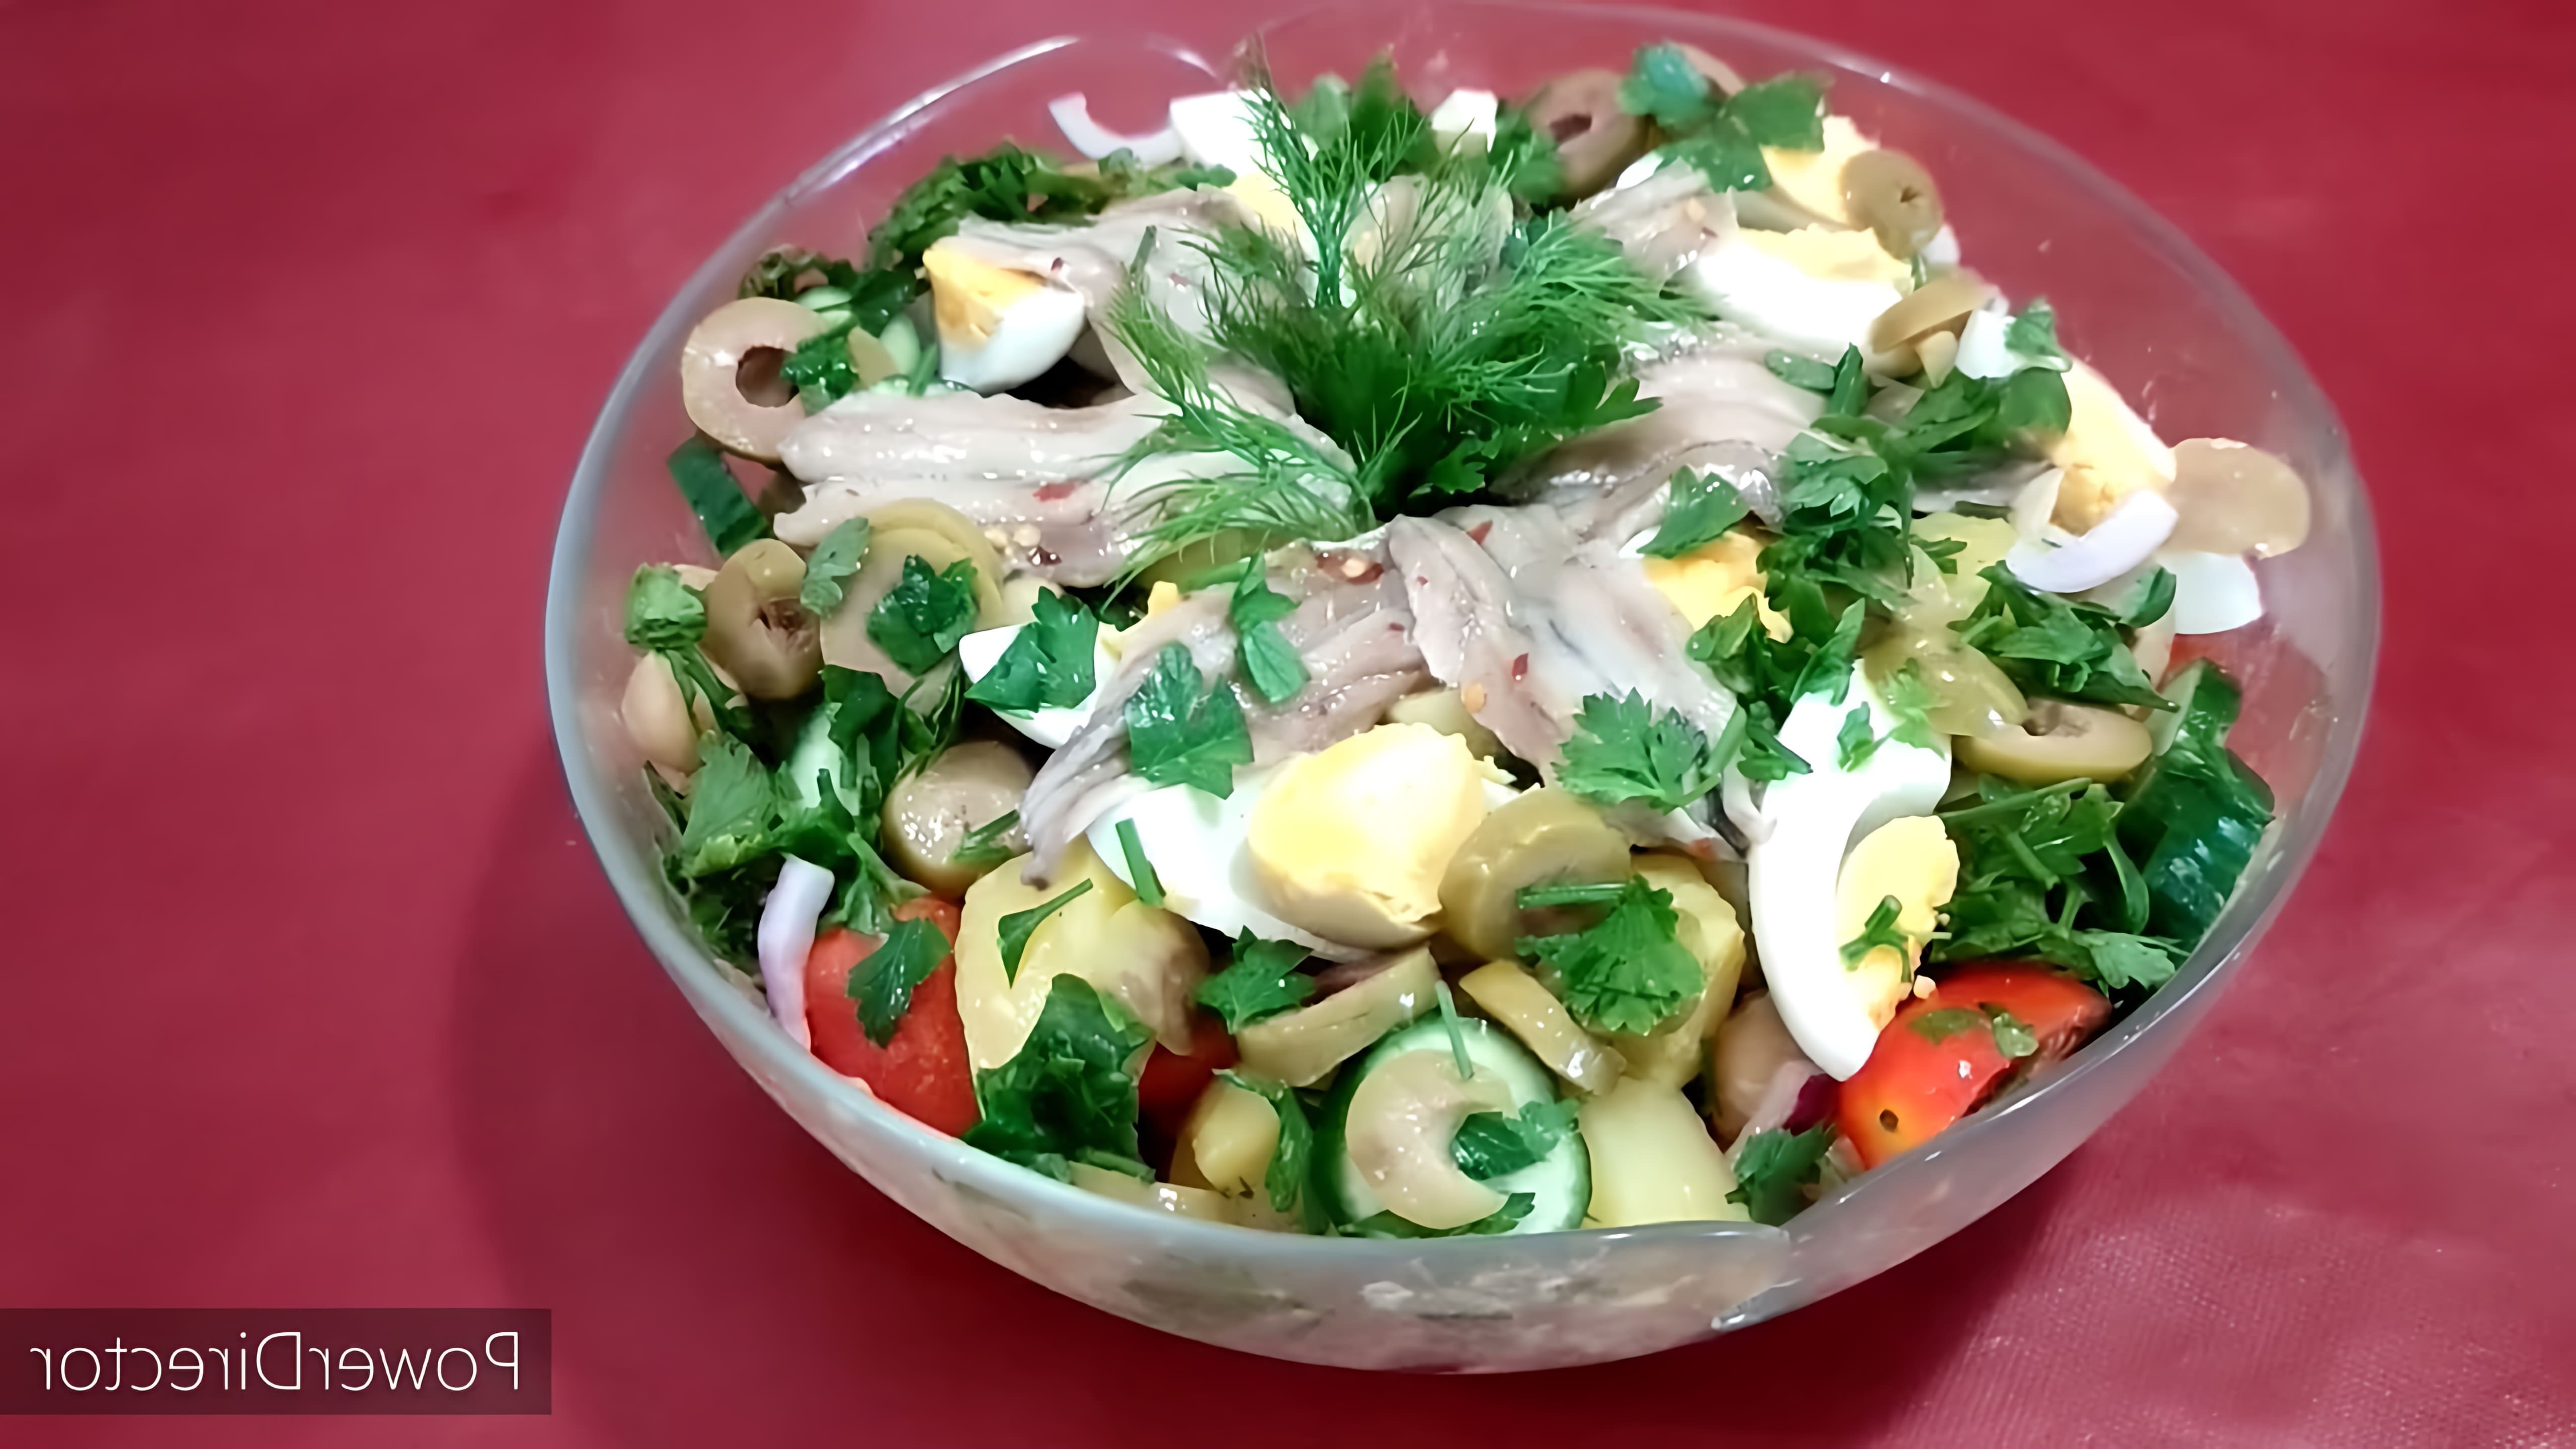 В этом видео демонстрируется процесс приготовления салата с анчоусами